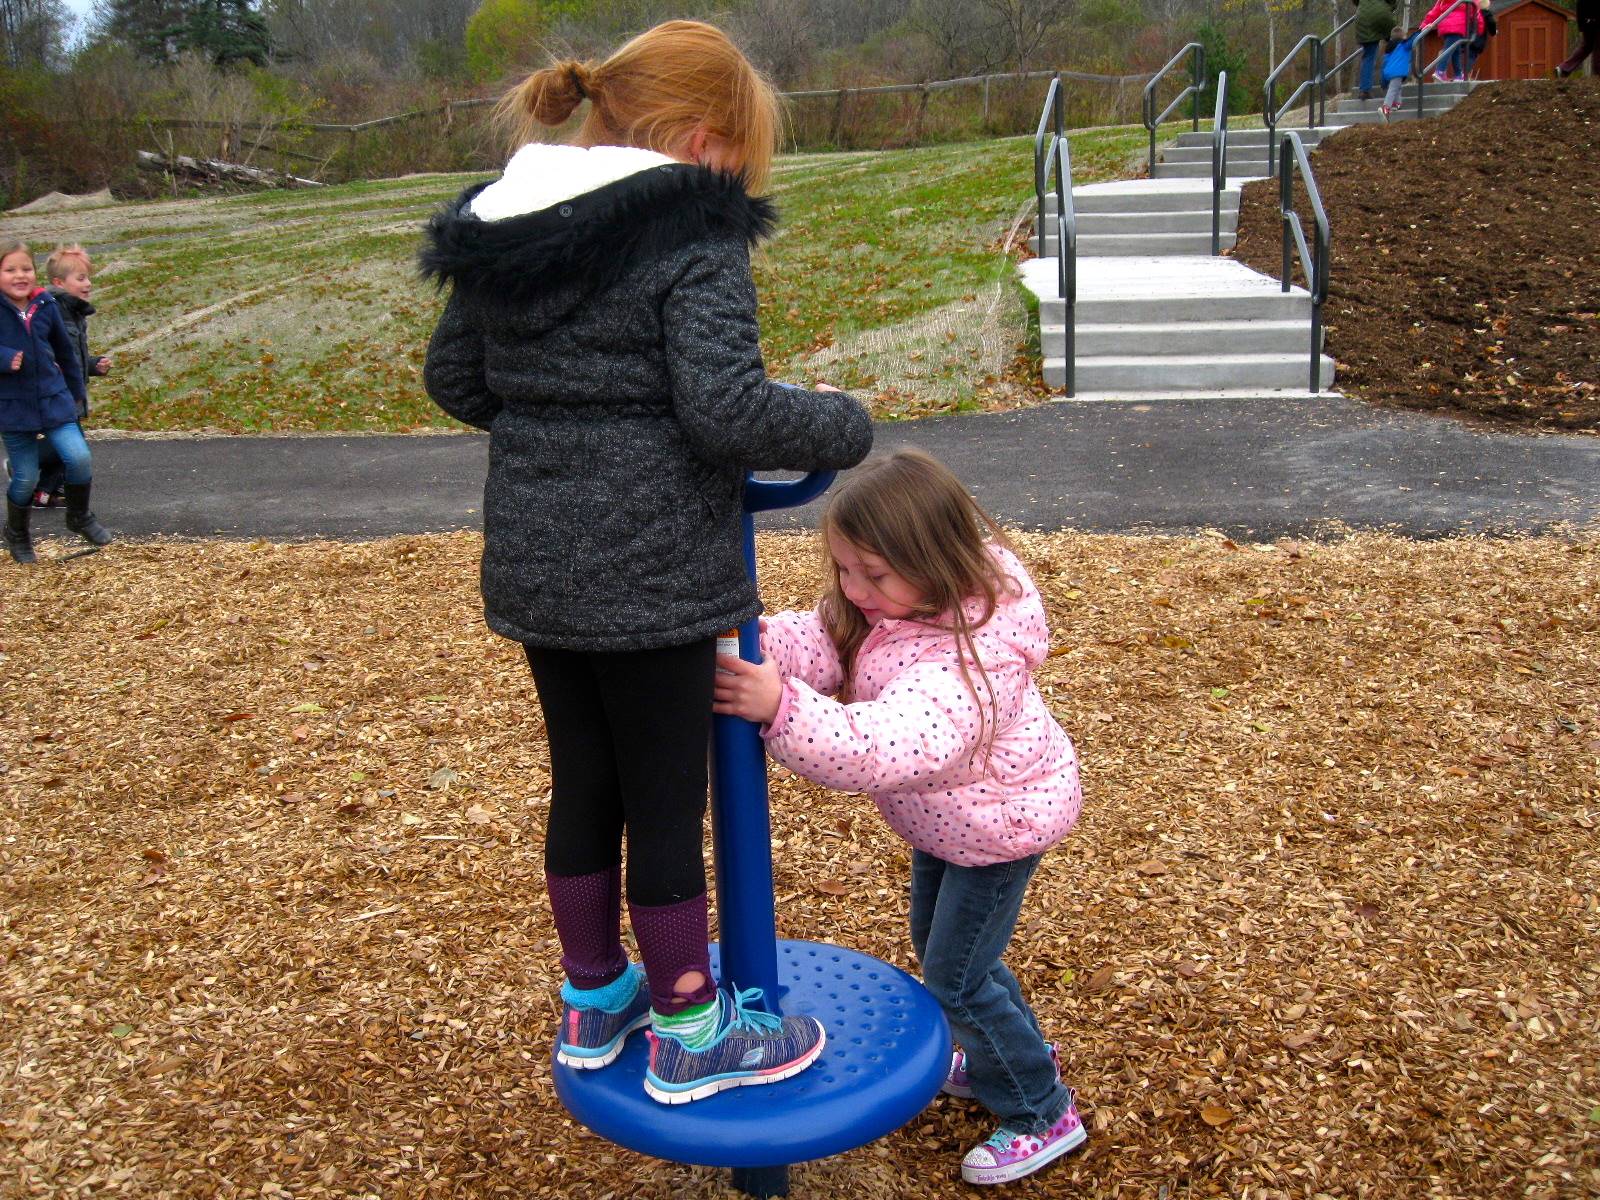 2 children spin on the spinner.